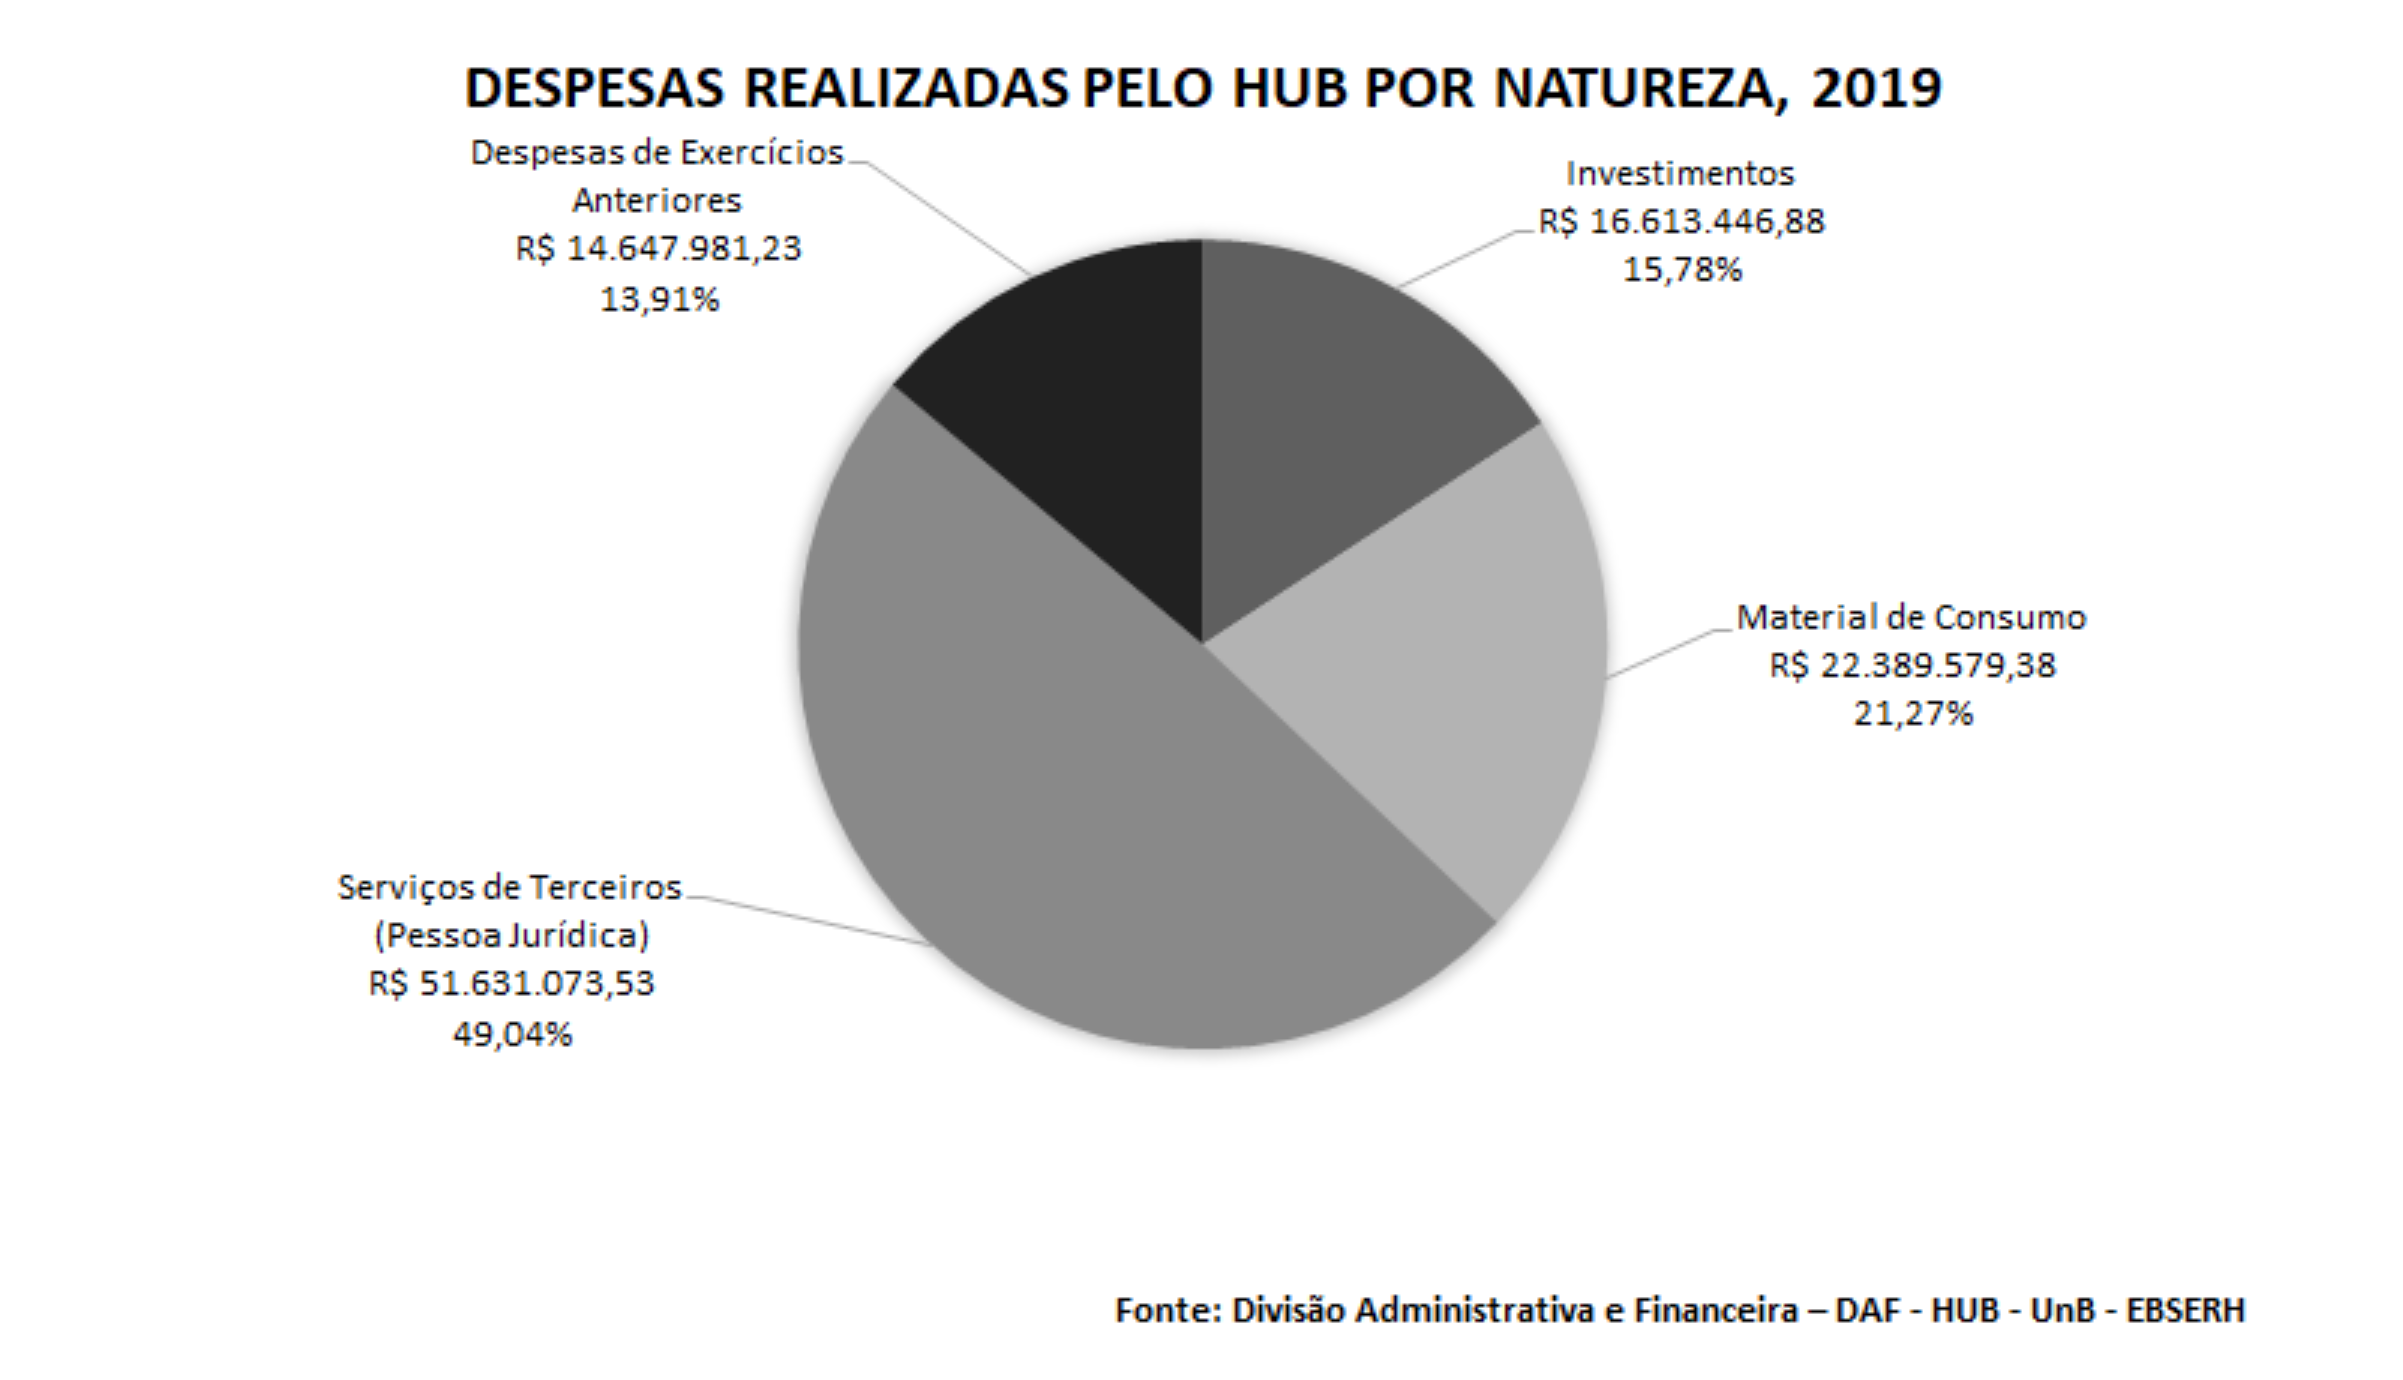 Despesas realizadas pelo HUB por natureza, 2019